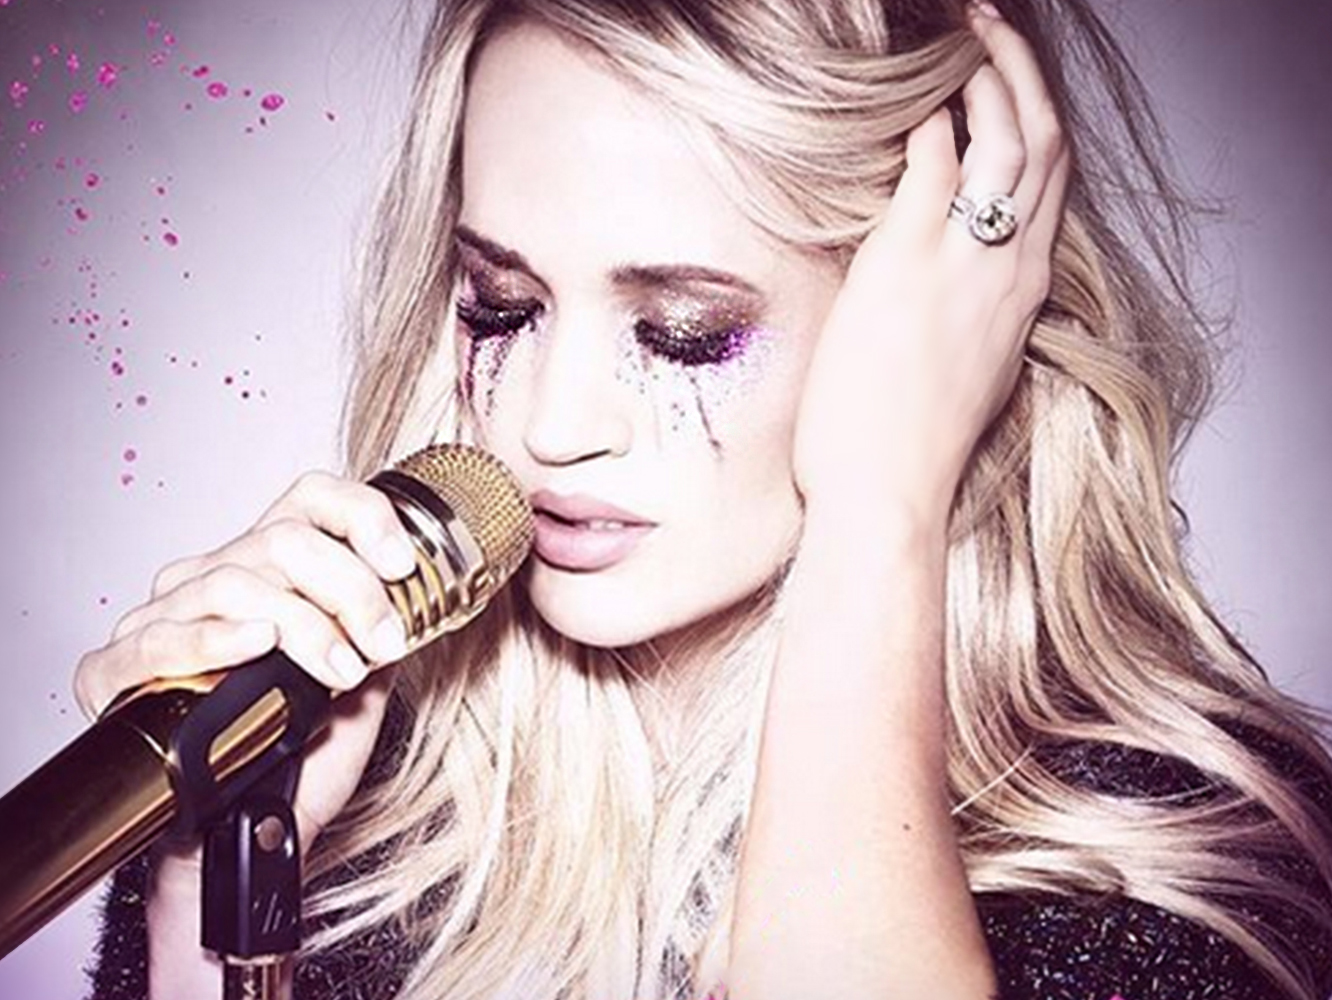  Carrie Underwood lanza ‘Cry Pretty’ y echa el freno en su aventura pop